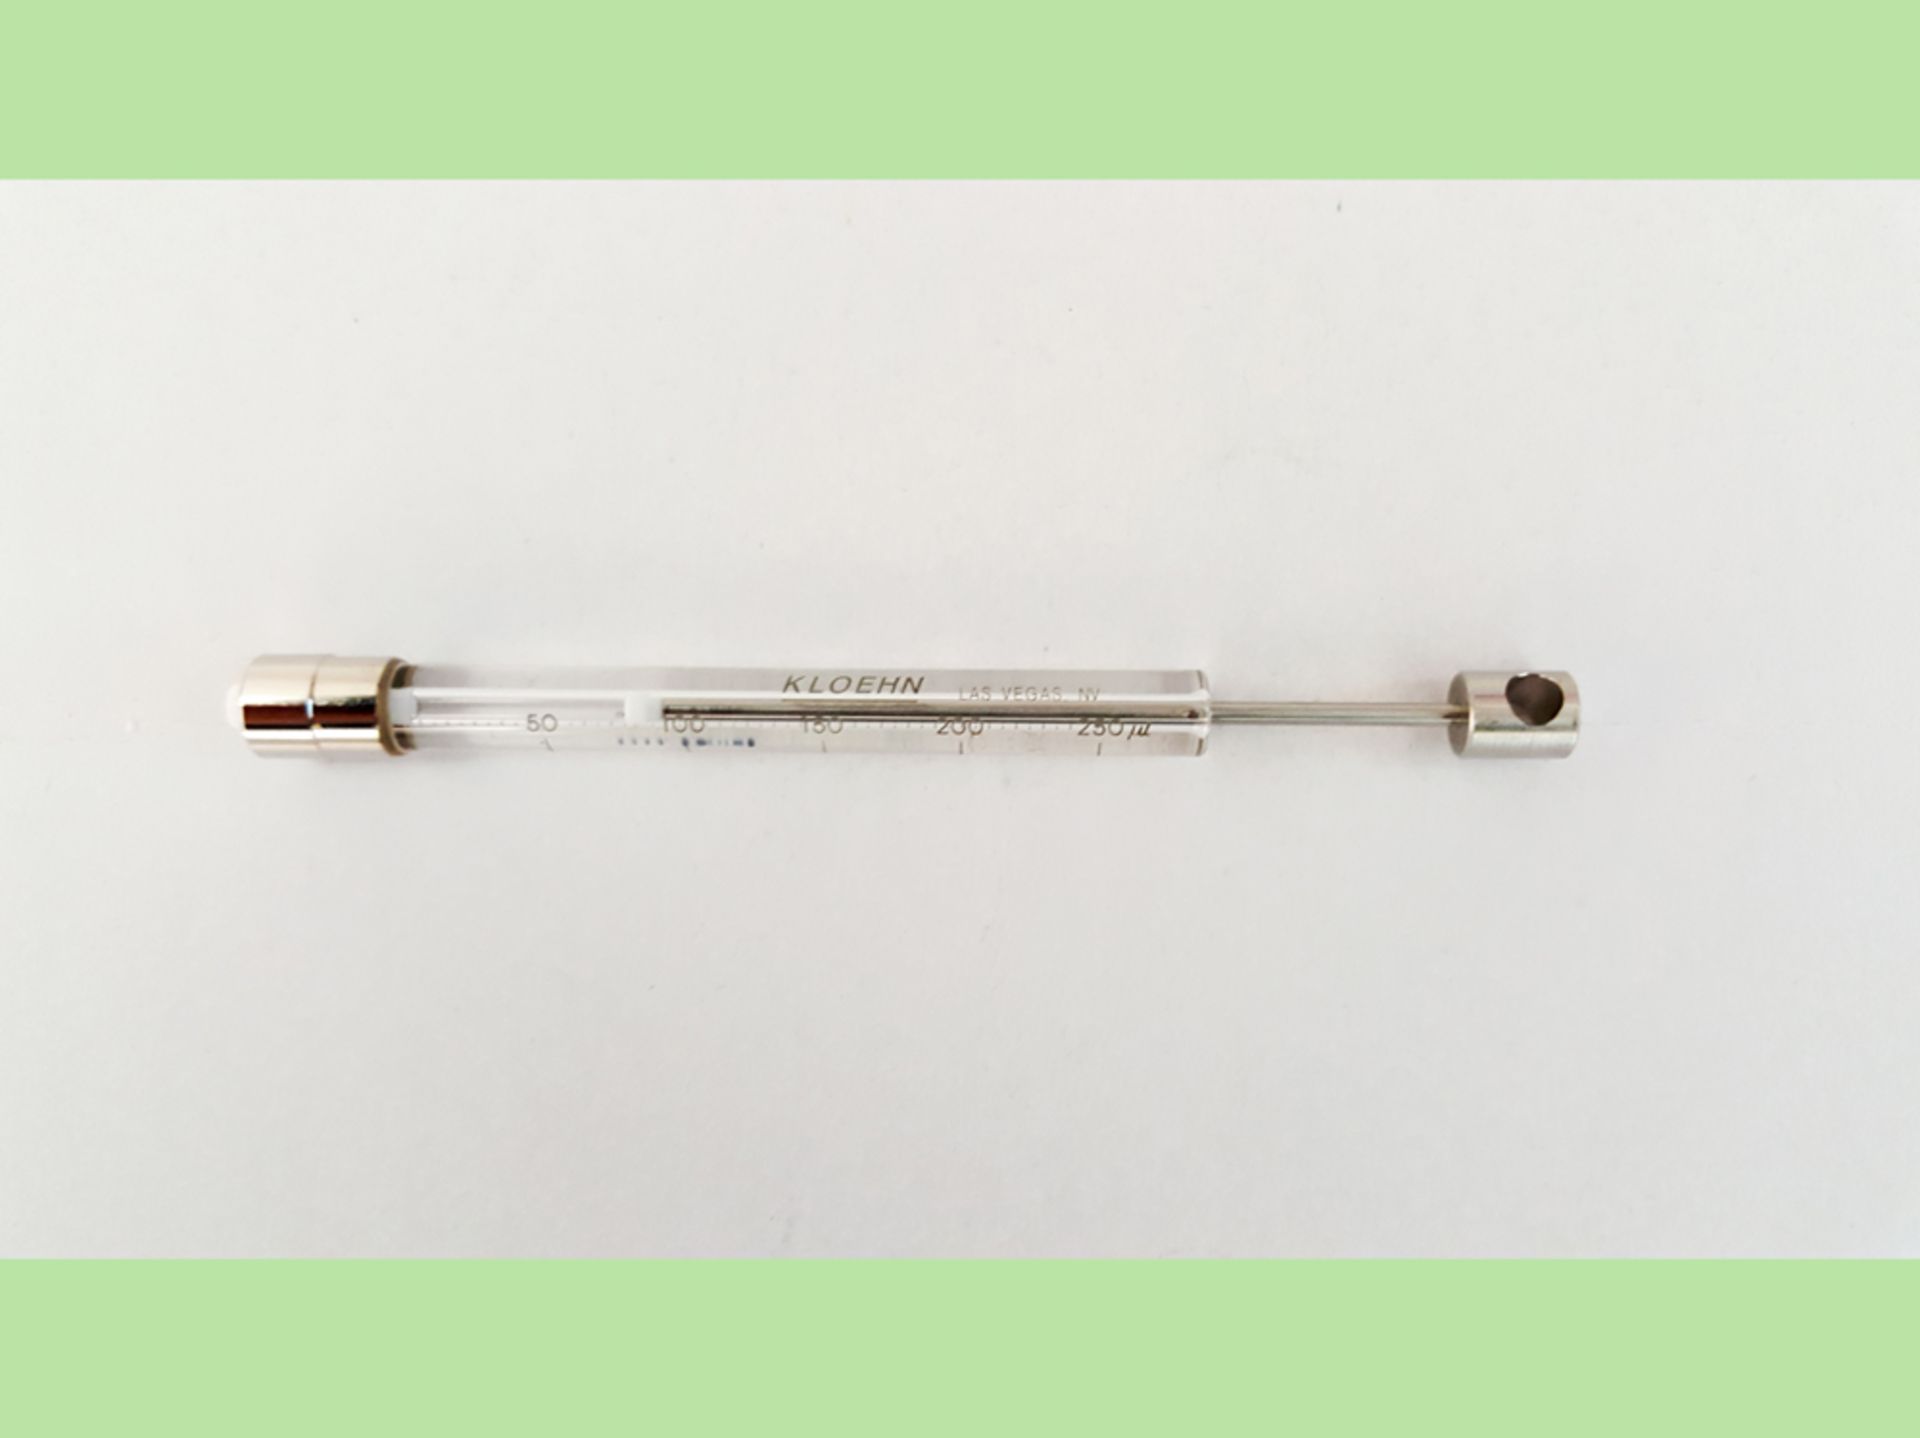 Kloehn 3000 Series Syringe 250ul HPLC, P/N 160130 (Ref: WA11756) - Image 2 of 4